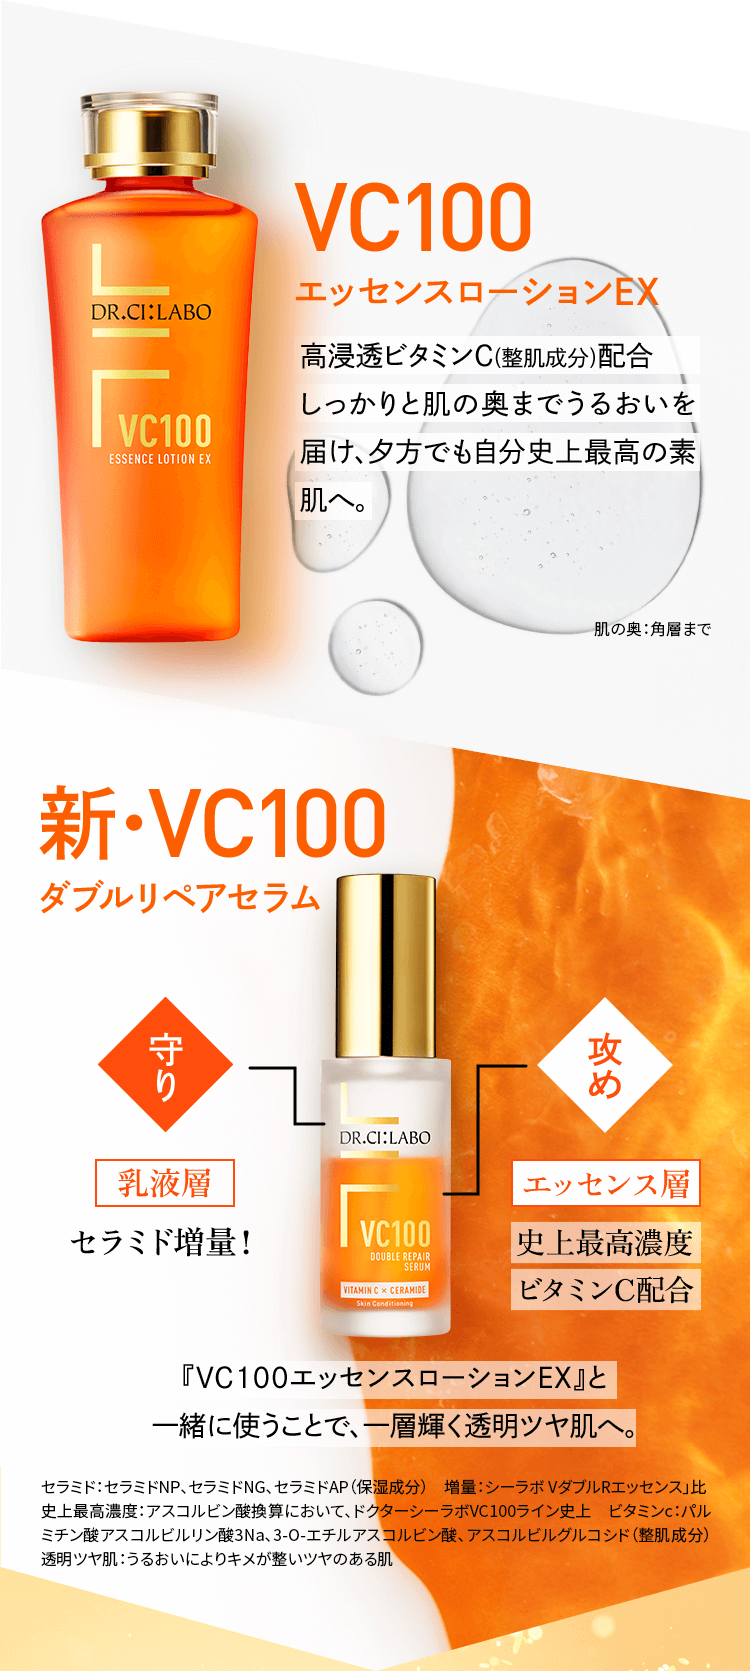 VC100エッセンスローションEX 高浸透ビタミンC(整肌成分)配合。しっかりと肌の奥までうるおいを届け、夕方でも自分史上最高の素肌へ。　肌の奥：角層まで　新・VC100ダブルリペアセラム セラミド増量！ 史上最高濃度ビタミンC配合 『VC100エッセンスローションEX』と一緒に使うことで、一層輝く透明ツヤ肌へ。 セラミド：セラミドNP、セラミドNG、セラミドAP（保湿成分）　増量：シーラボ VダブルRエッセンス」比　史上最高濃度：アスコルビン酸換算において、ドクターシーラボVC100ライン史上　ビタミンc：パルミチン酸アスコルビルリン酸3Na、3-O-エチルアスコルビン酸、アスコルビルグルコシド（整肌成分）透明ツヤ肌：うるおいによりキメが整いツヤのある肌